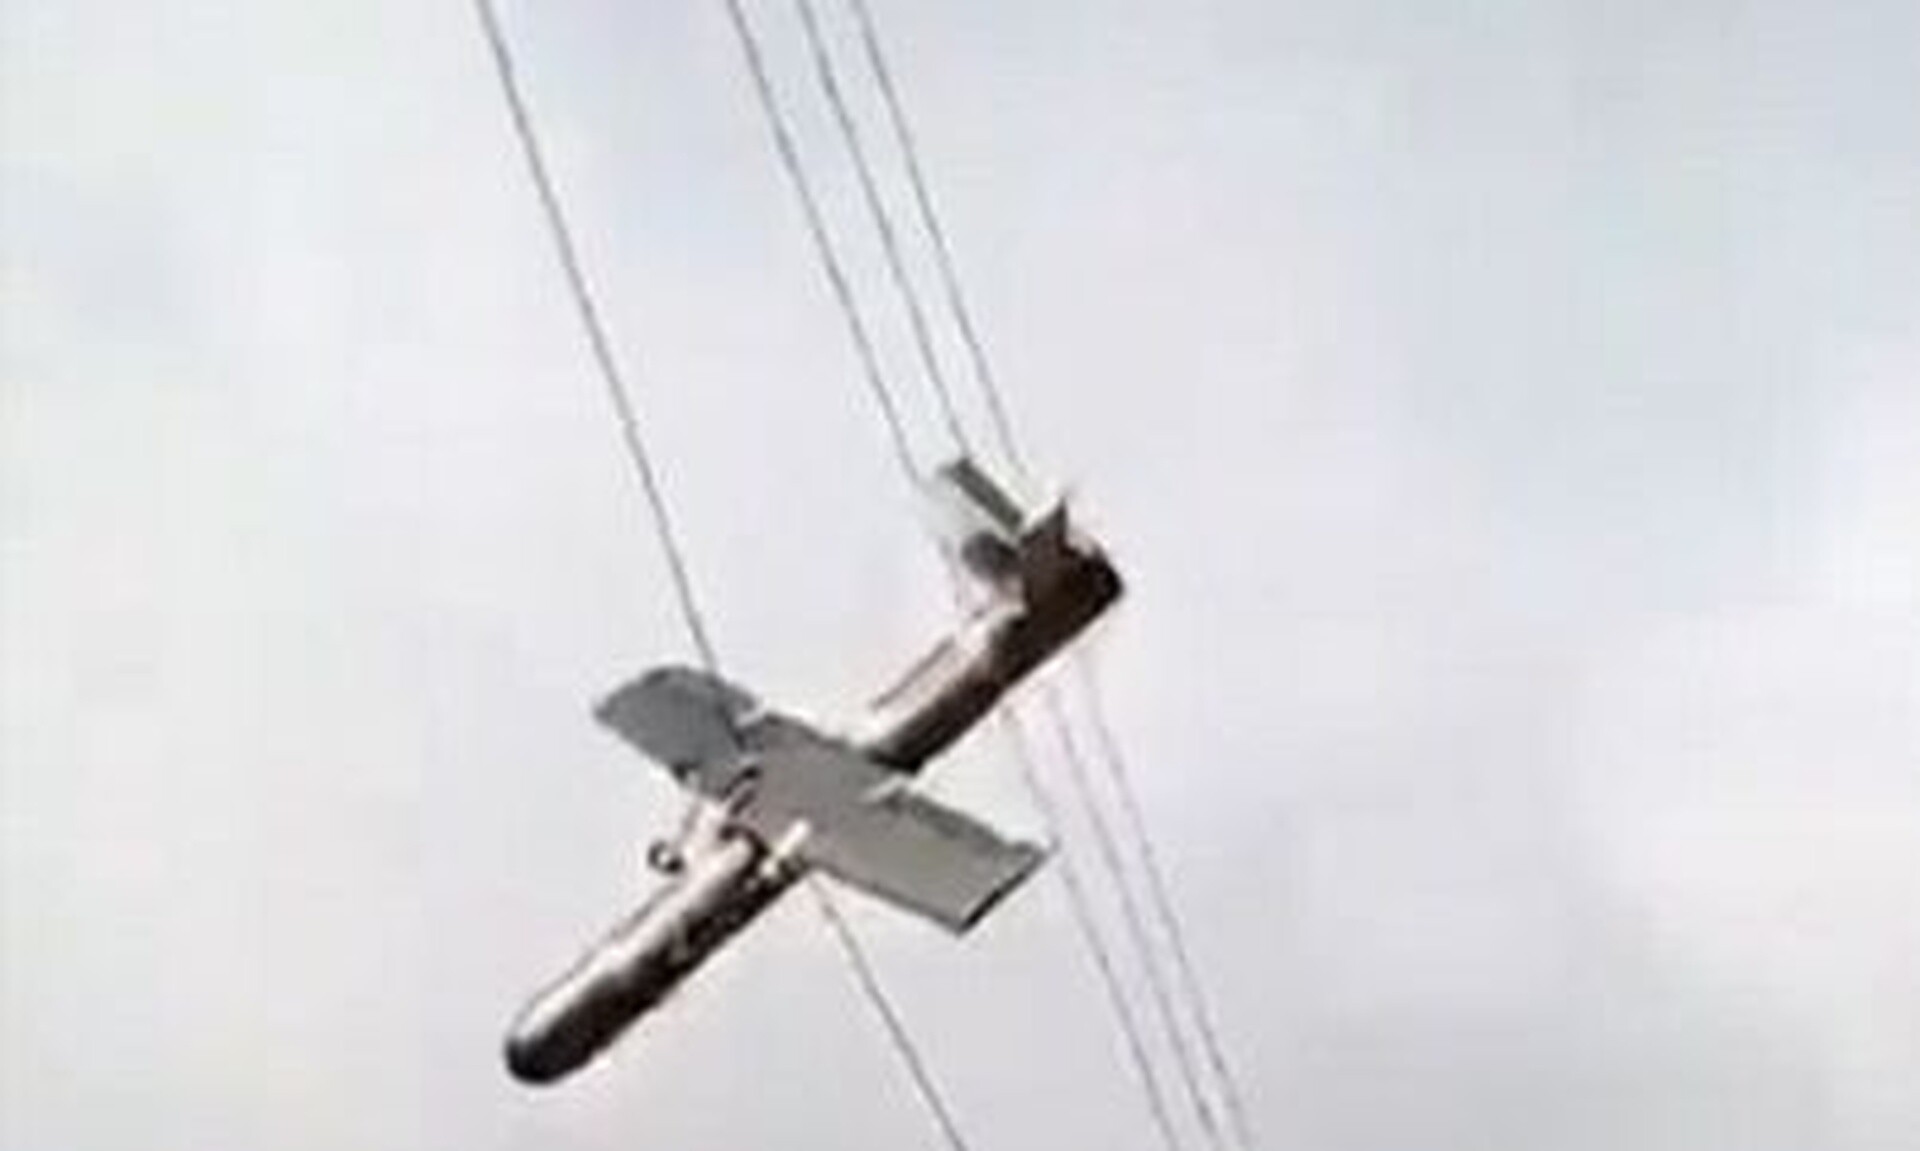 Ανεπιβεβαίωτη φώτο με Ιρανικό drone που σύμφωνα το tweet είχε στόχο το Ισραήλ άλλα... έμπλεξε στο δρόμο